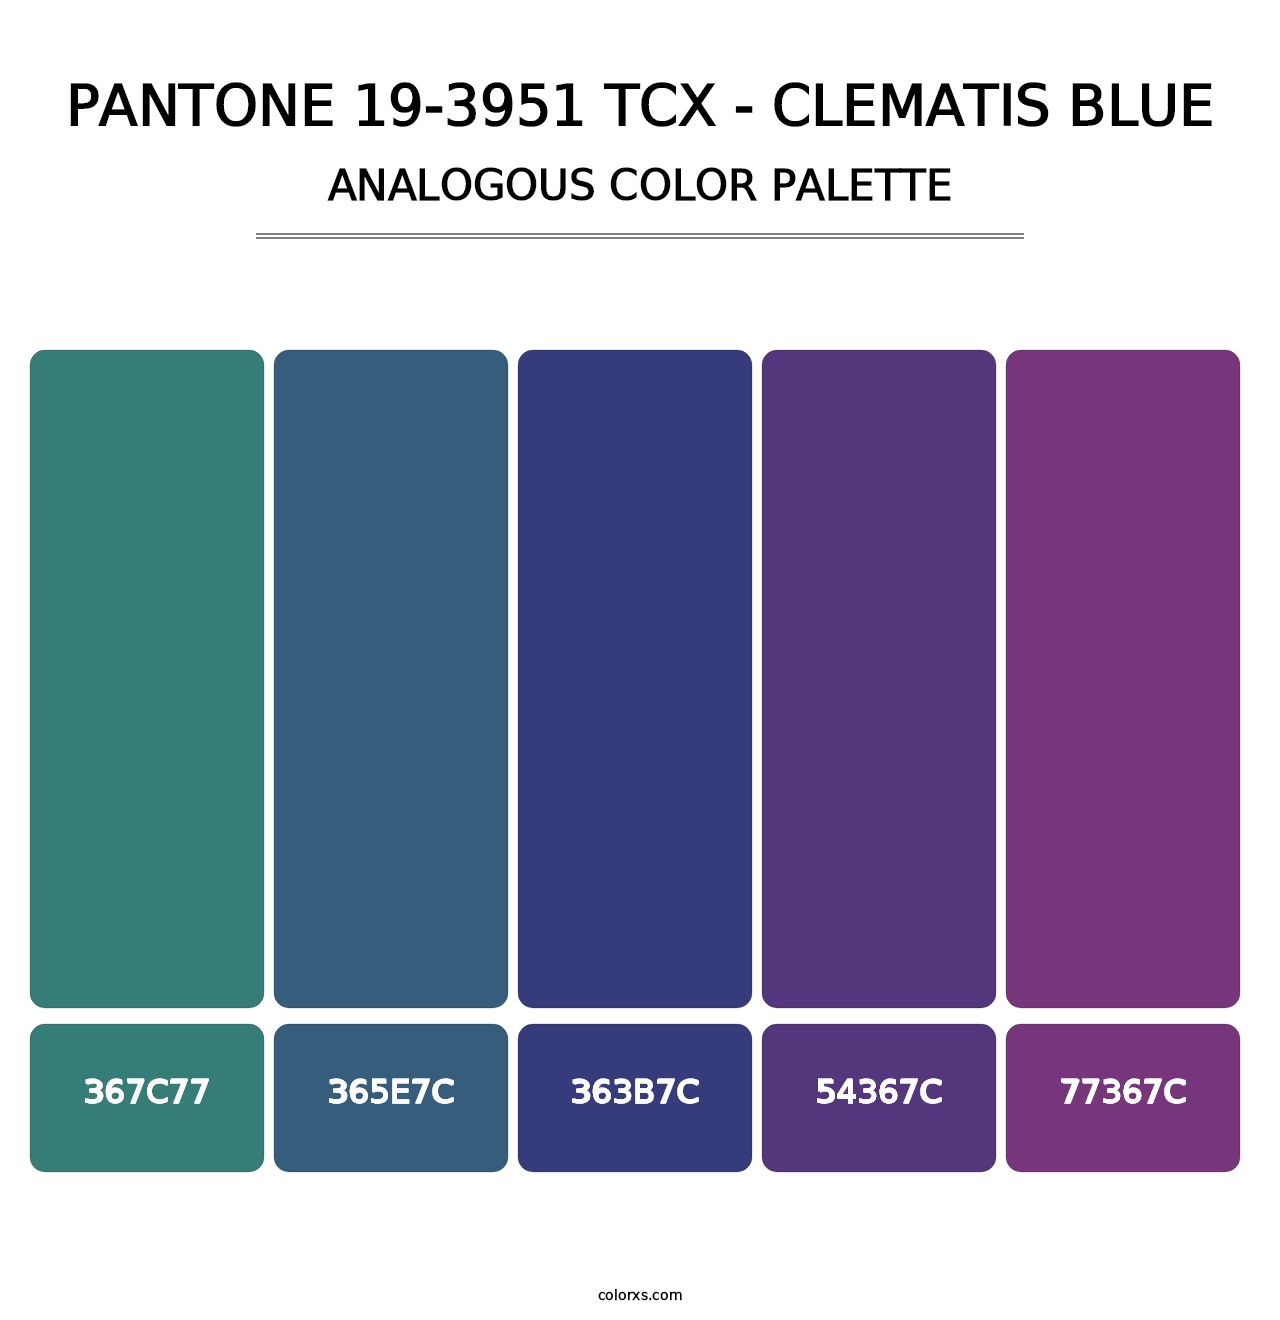 PANTONE 19-3951 TCX - Clematis Blue - Analogous Color Palette